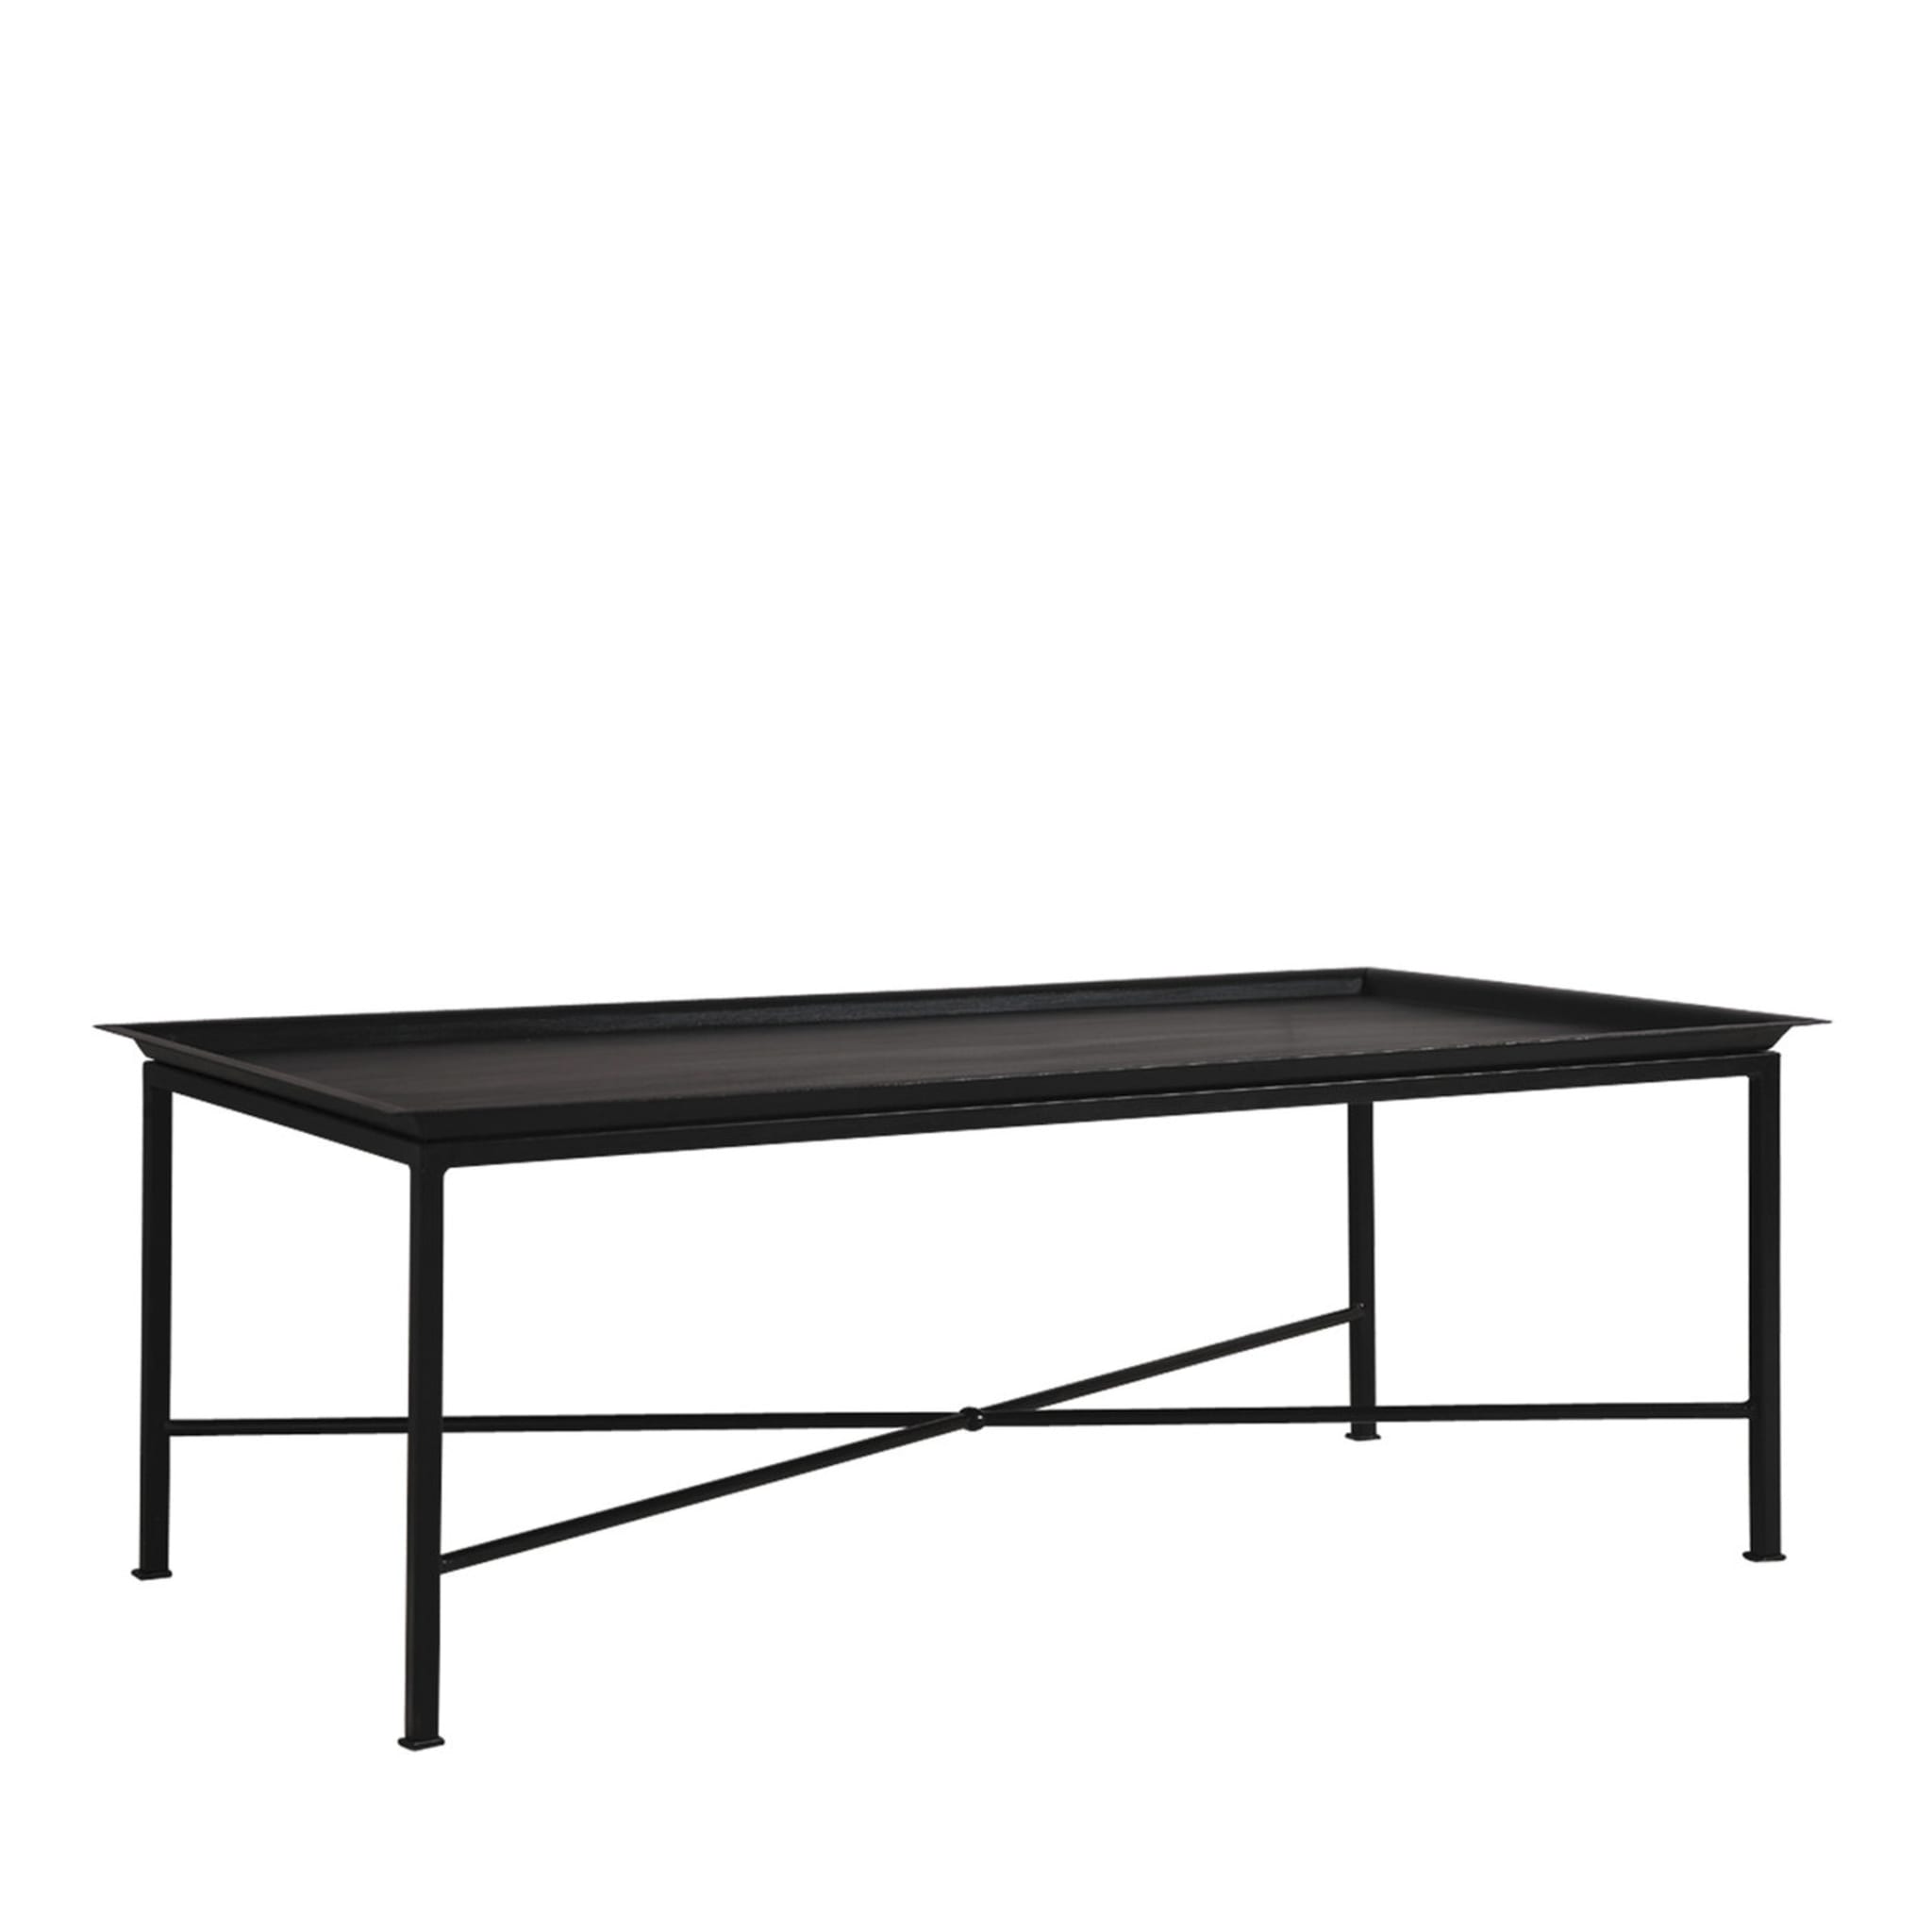 Tavolino e vassoio in patina nera - Vista principale